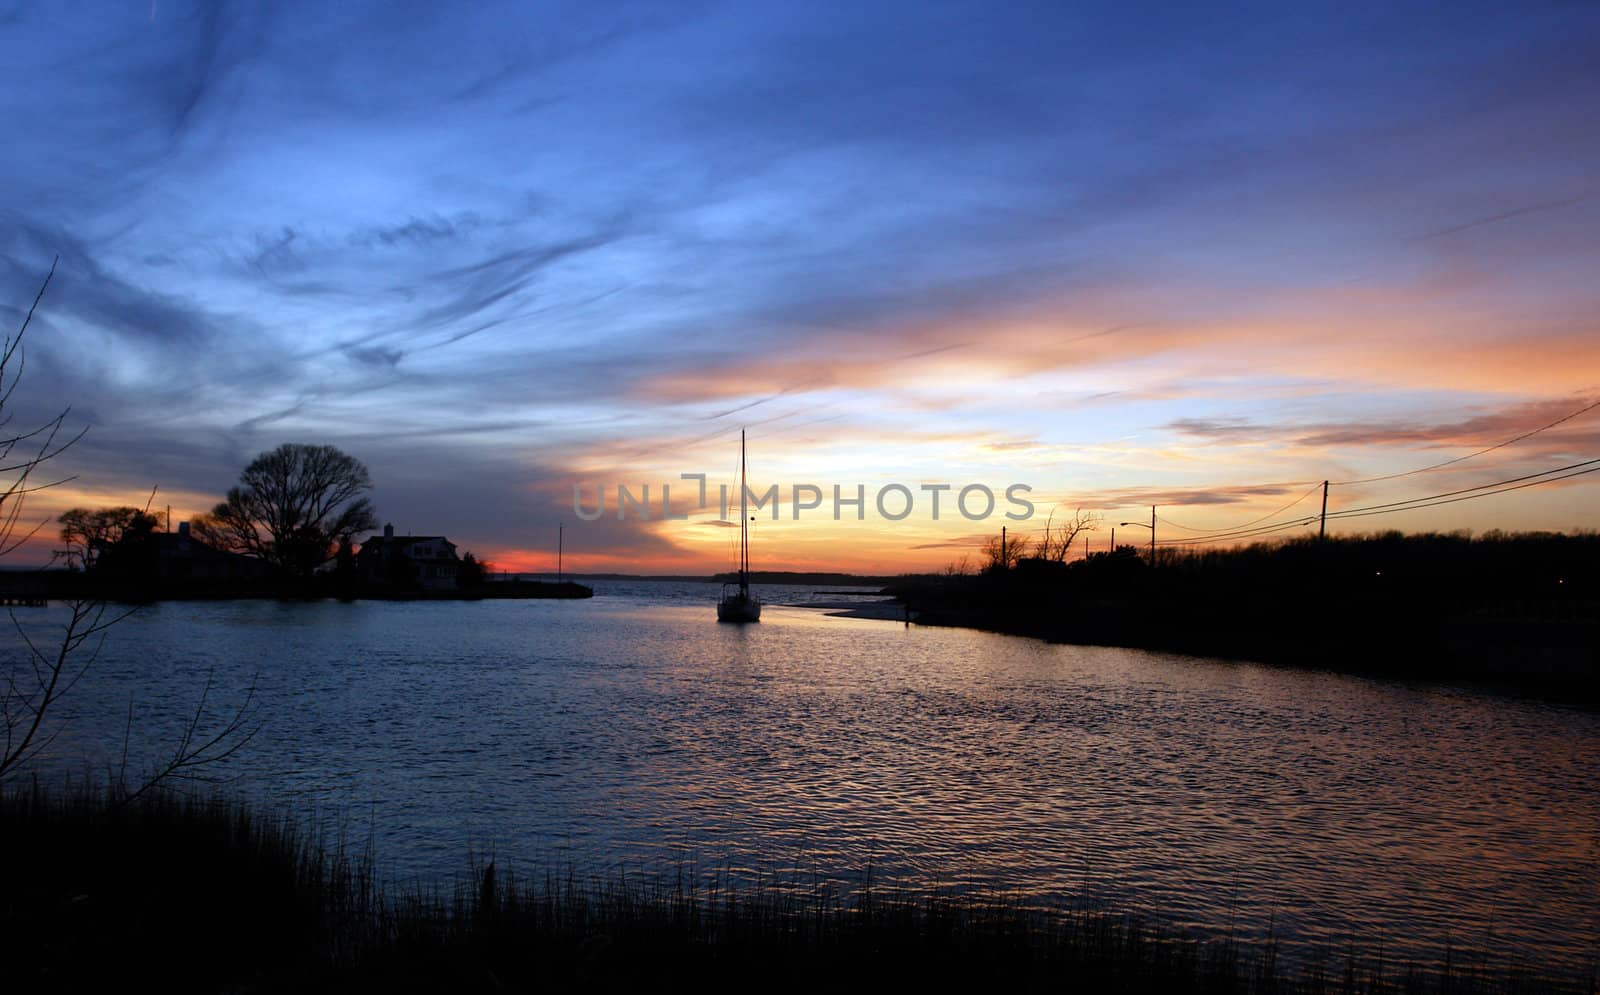 Sailboat sailing towards sunset on a calm evening